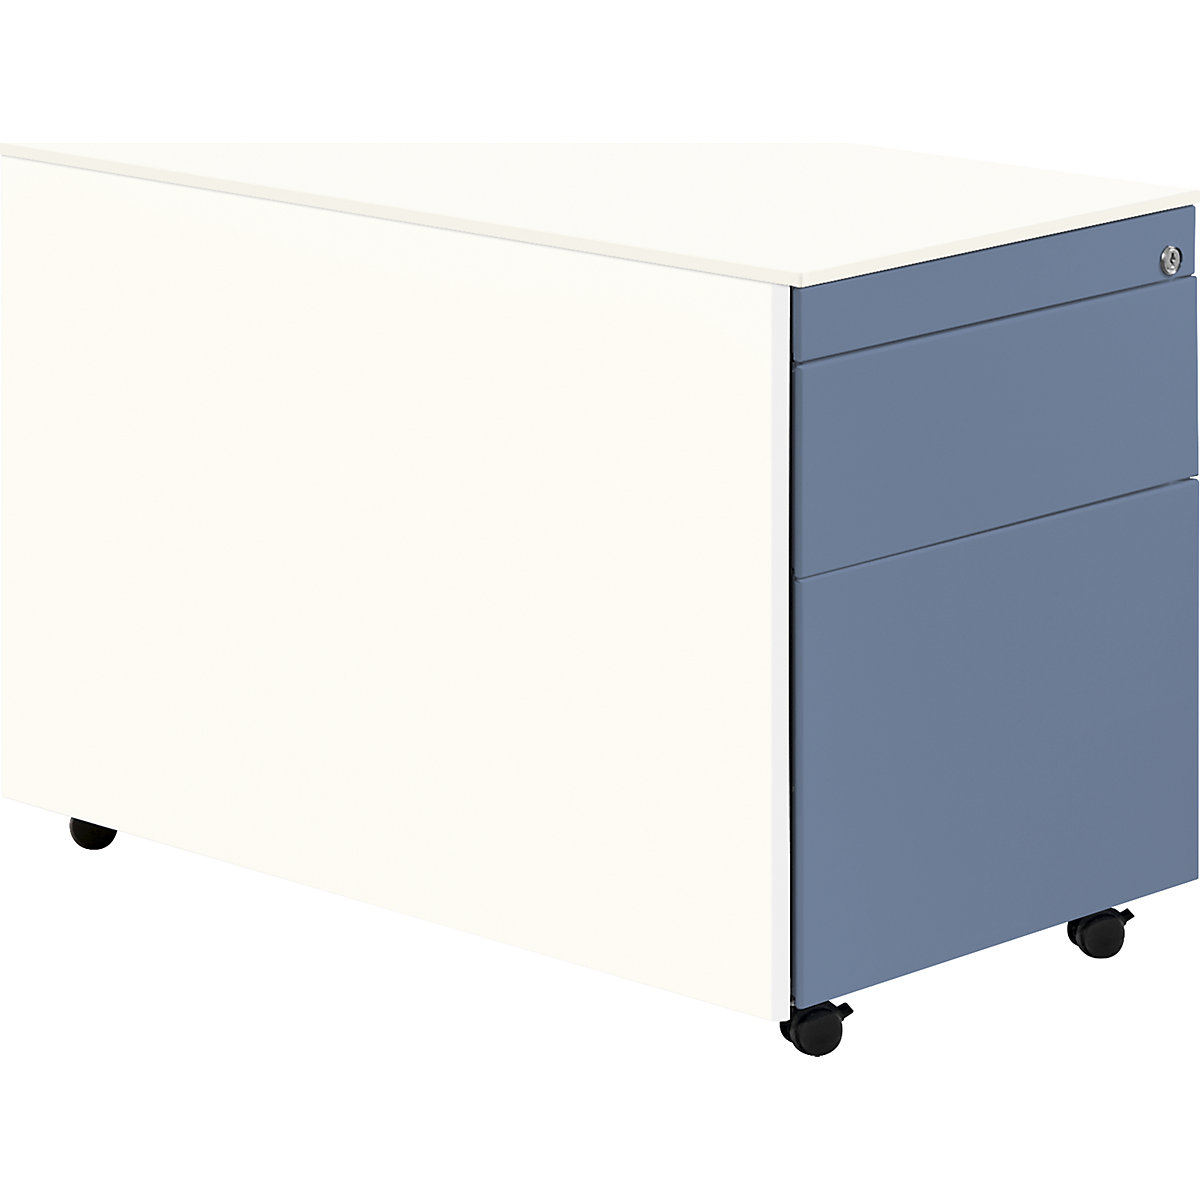 mauser Schubladencontainer mit Rollen, HxT 570 x 800 mm, 1 Materialschub, 1 Hängeregistratur, reinweiß / taubenblau / reinweiß